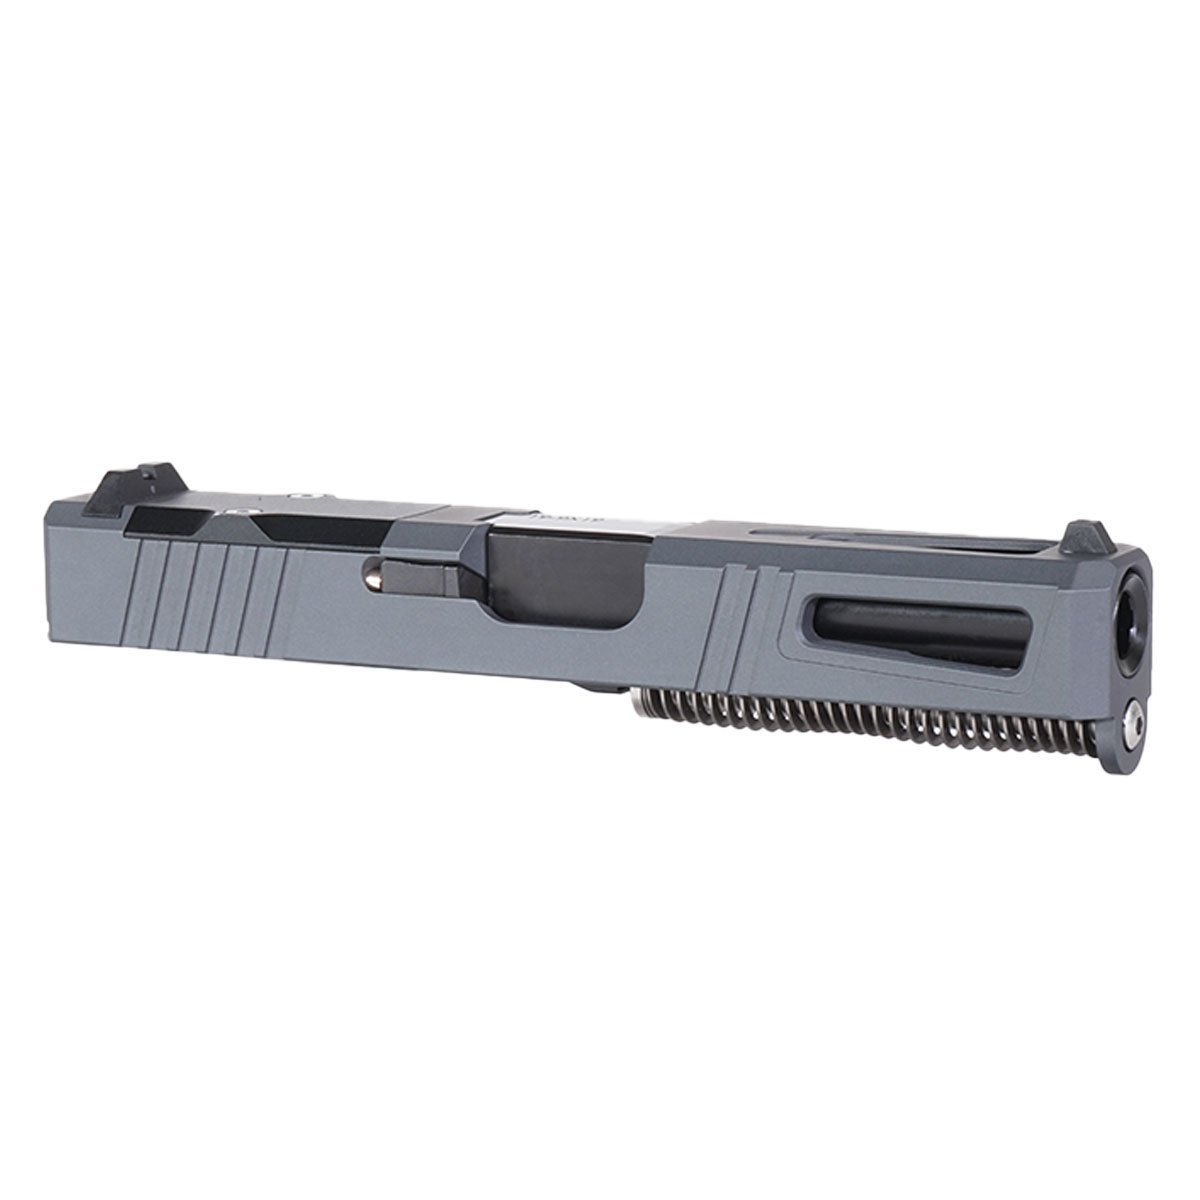 OTD 'Sneak Peek' 9mm Complete Slide Kit - Glock 19 Gen 1-3 Compatible